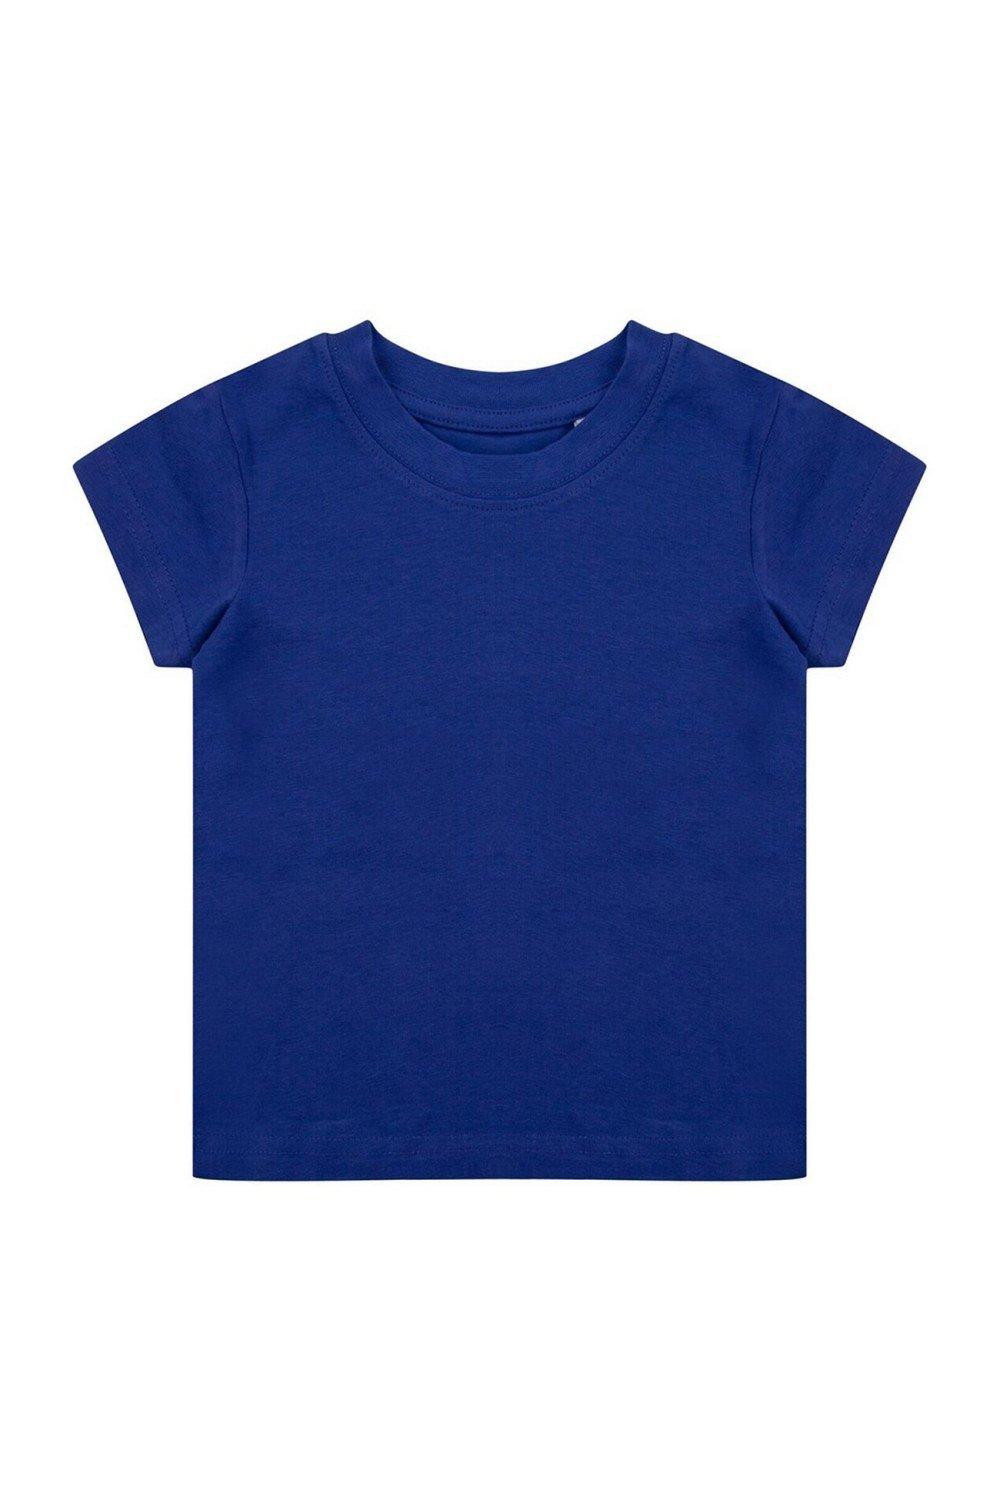 Органическая футболка Larkwood, синий костюм размер 12 18 мес